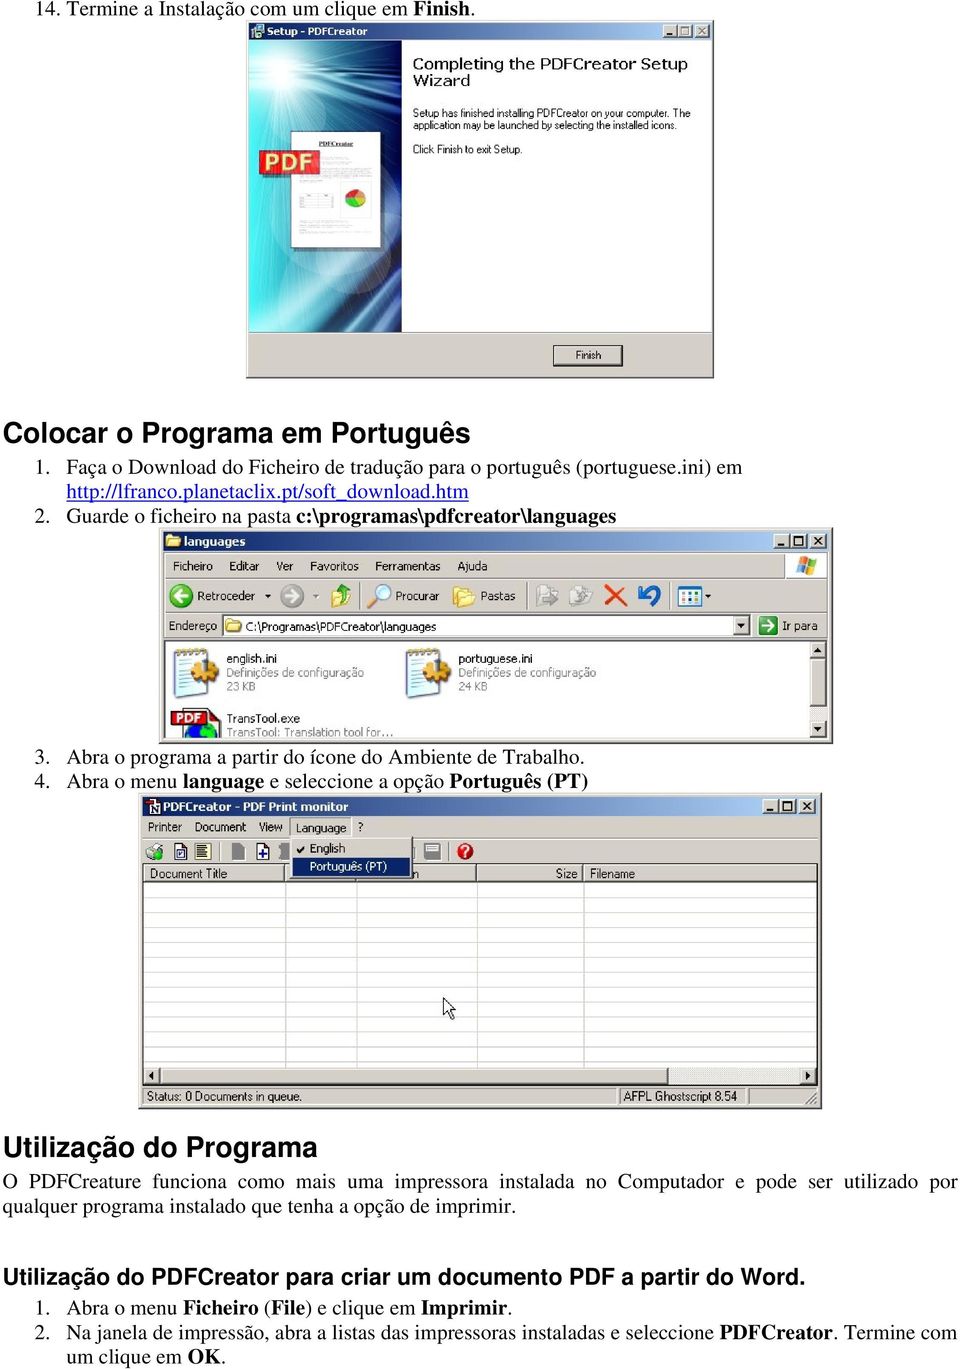 Abra o menu language e seleccione a opção Português (PT) Utilização do Programa O PDFCreature funciona como mais uma impressora instalada no Computador e pode ser utilizado por qualquer programa